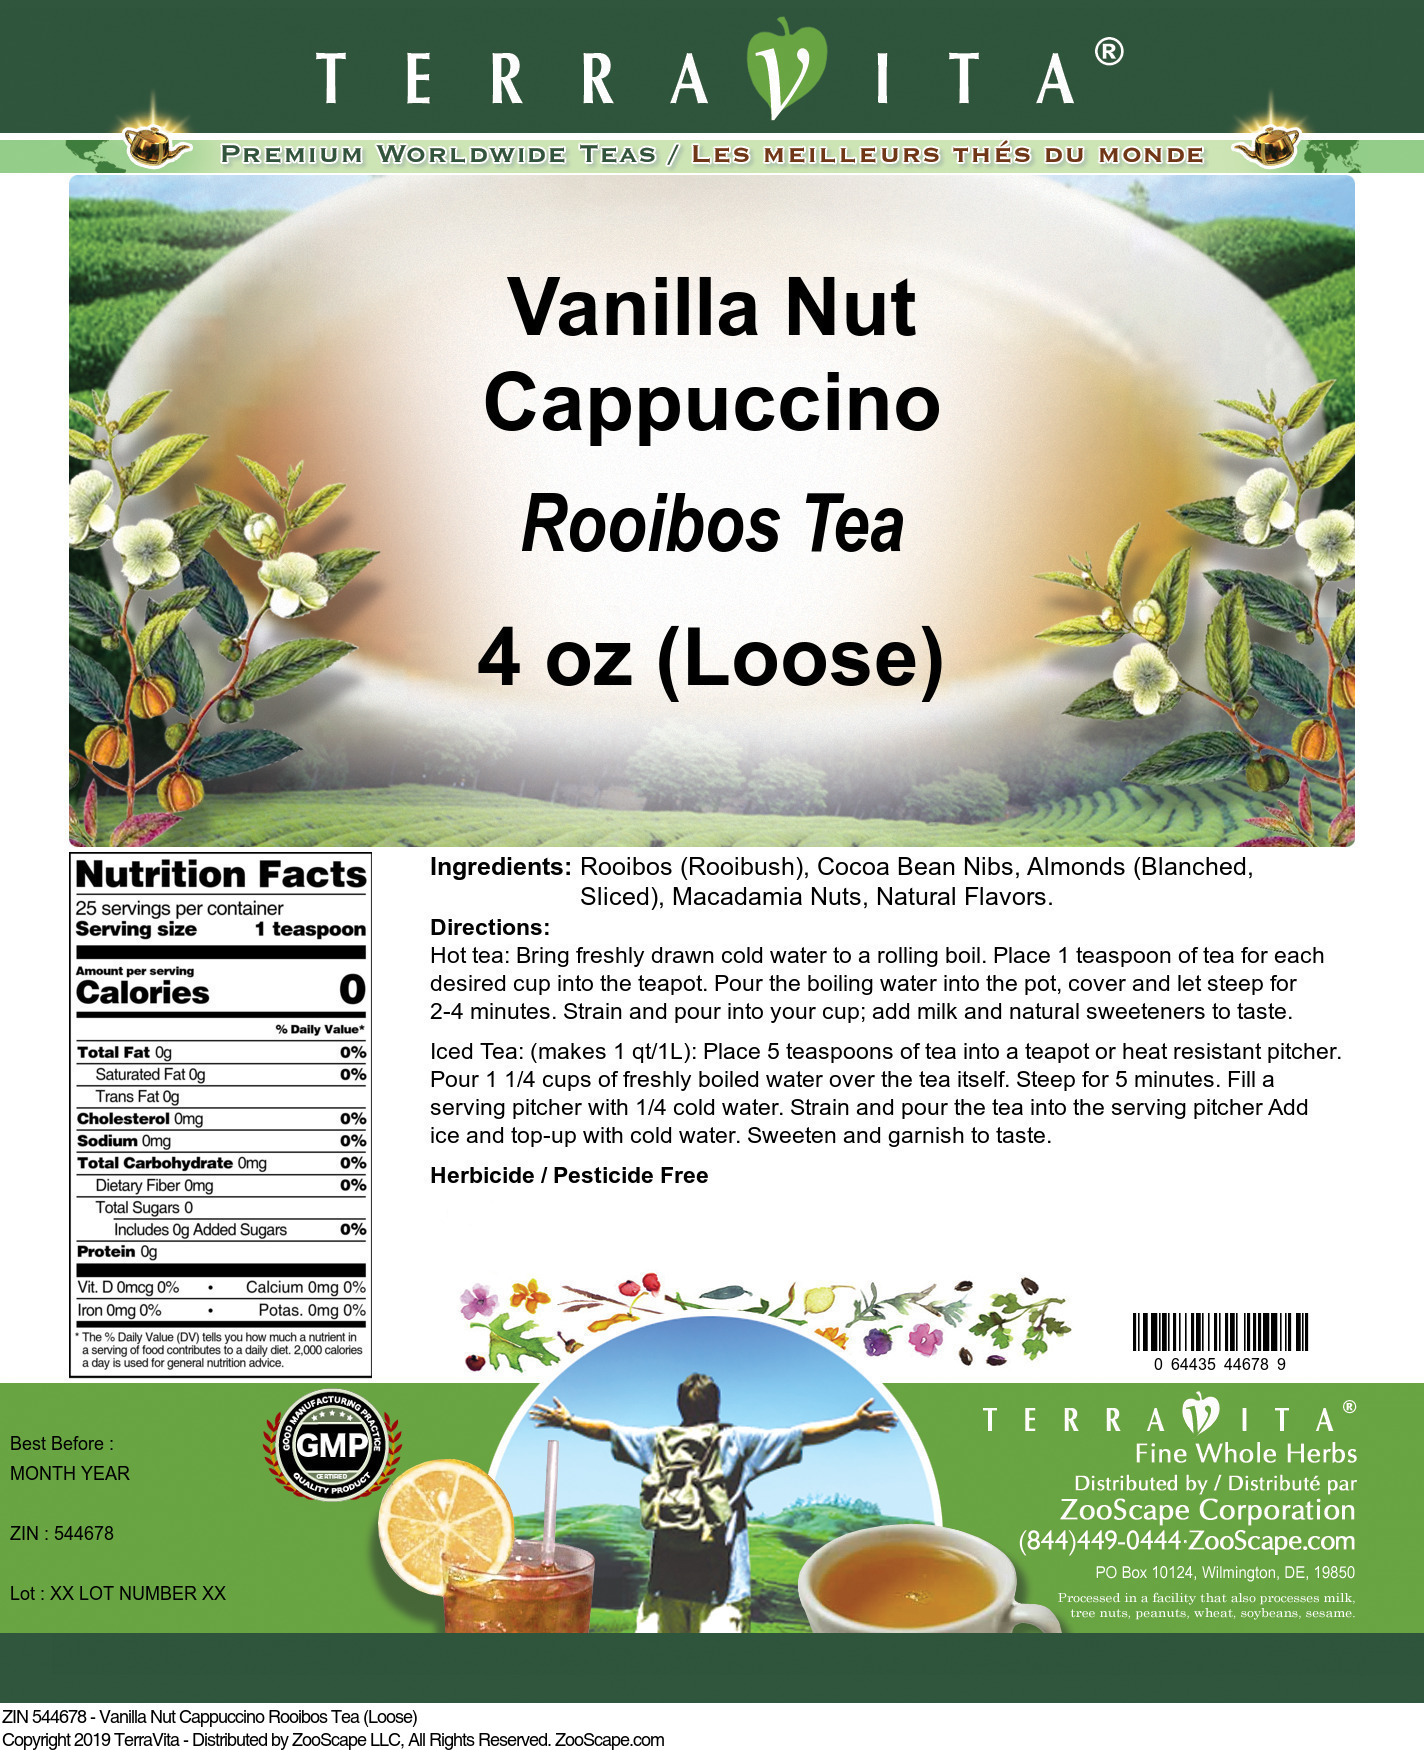 Vanilla Nut Cappuccino Rooibos Tea (Loose) - Label